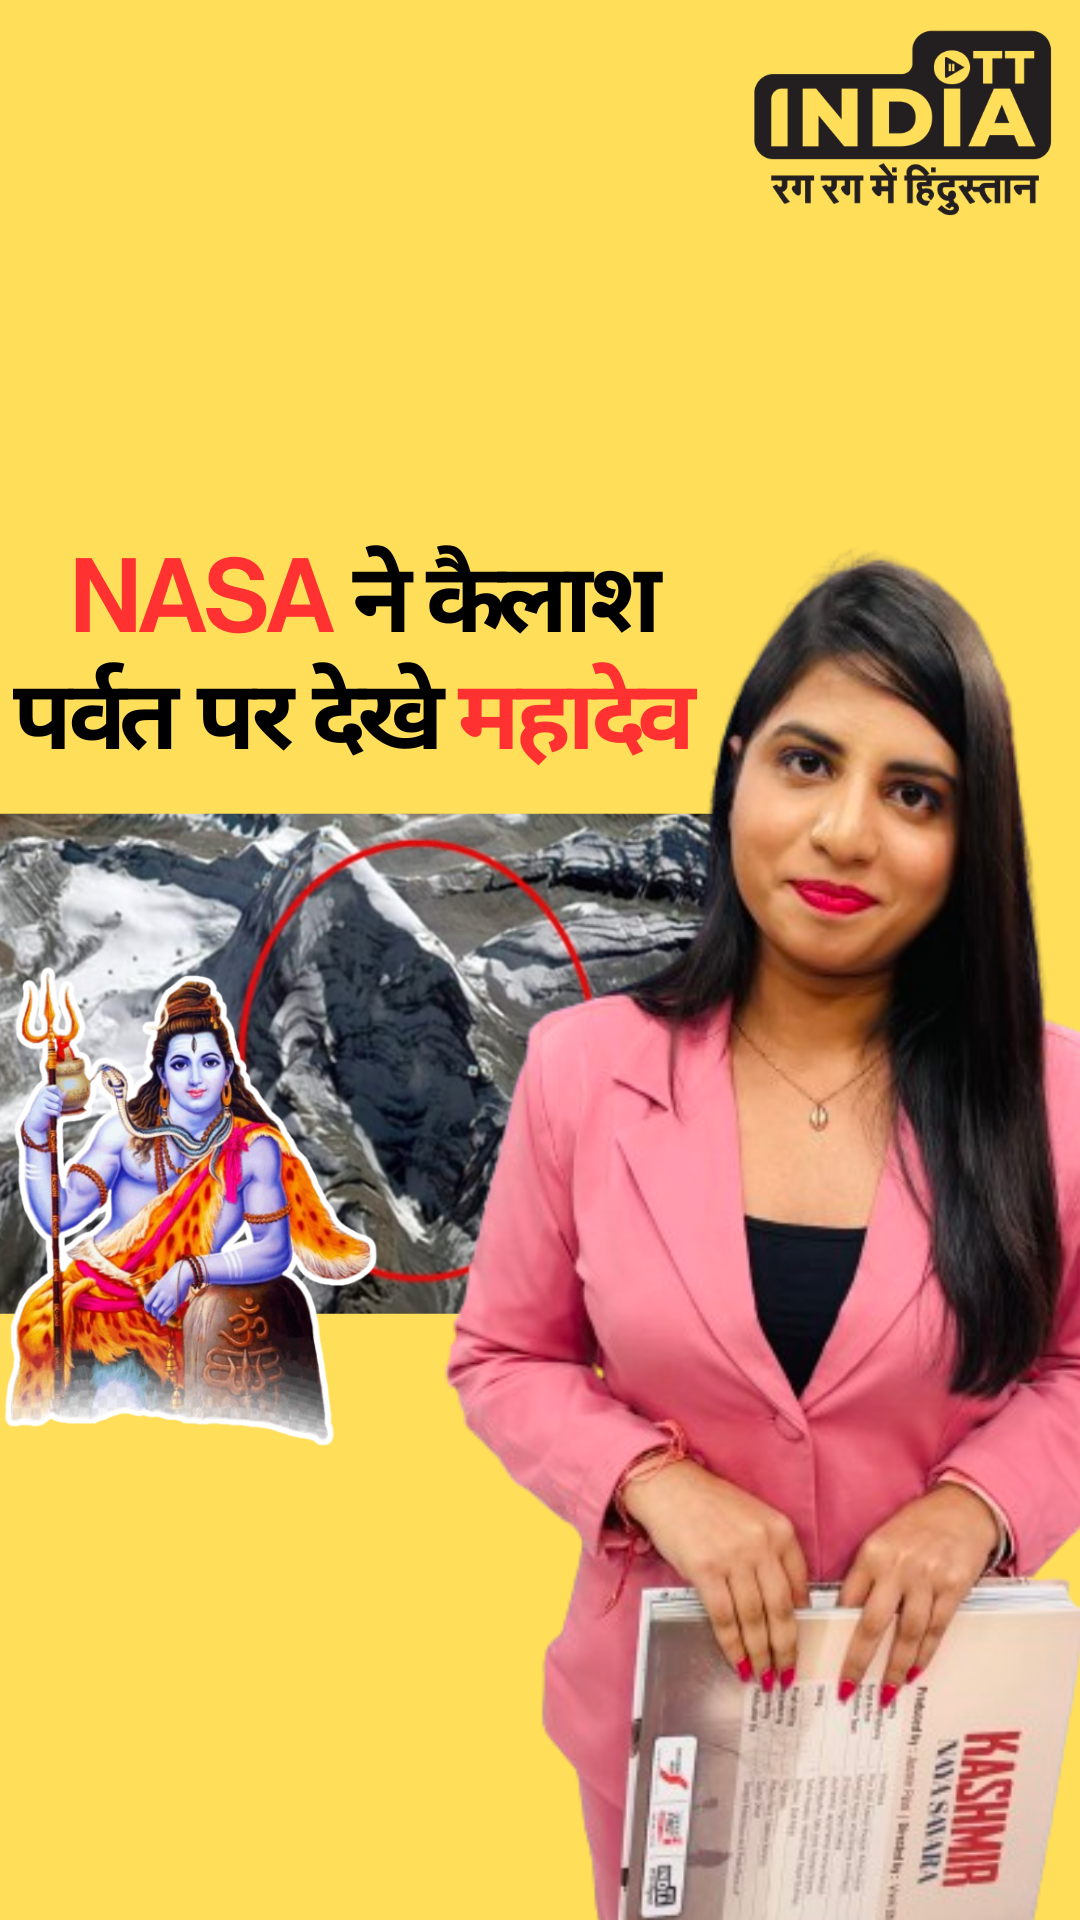 Shiva Face On Mount Kailash: NASA saw Mahadev on Mount Kailash!